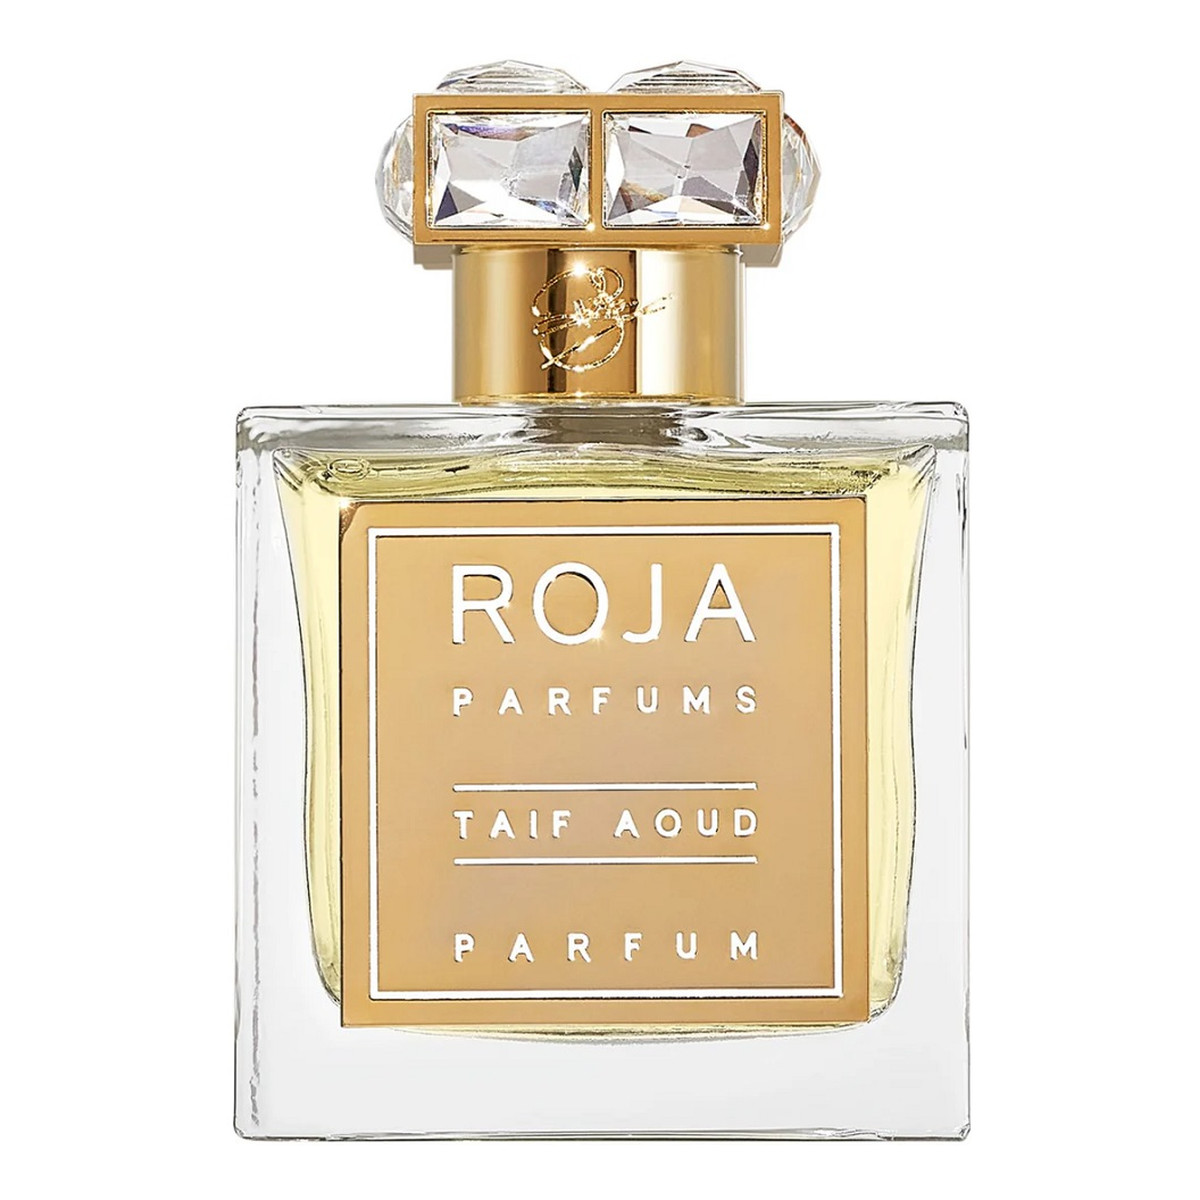 Roja Parfums Taif Aoud Perfumy spray 100ml